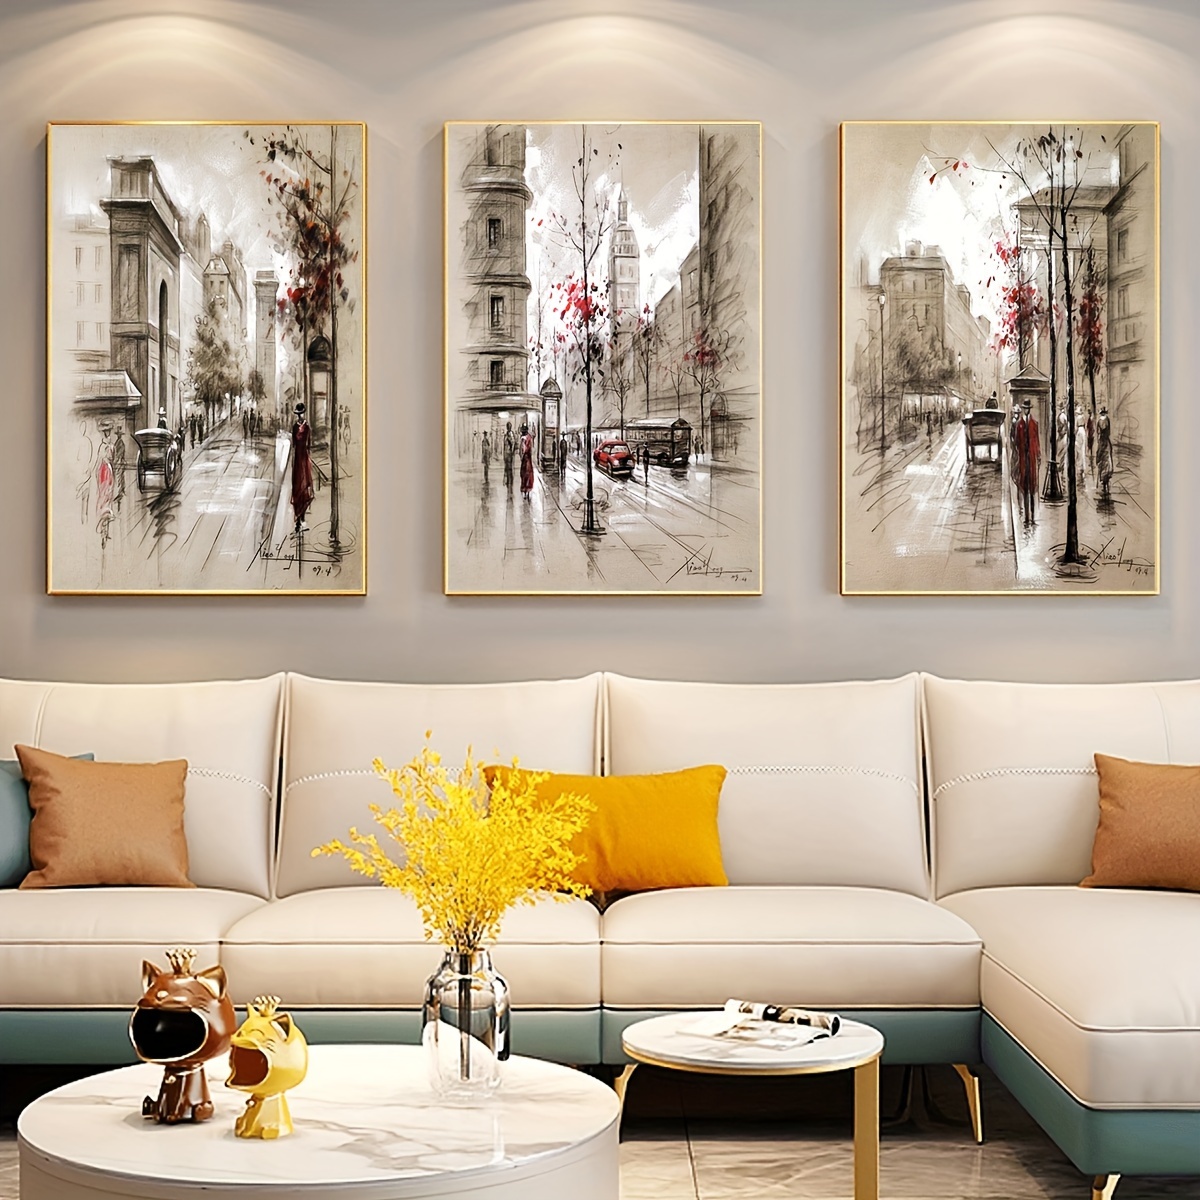 Lienzo grande para pared de sala de estar, decoración de pared de árbol  abstracto de flores blancas con imagen de madera flotante gris, impresiones